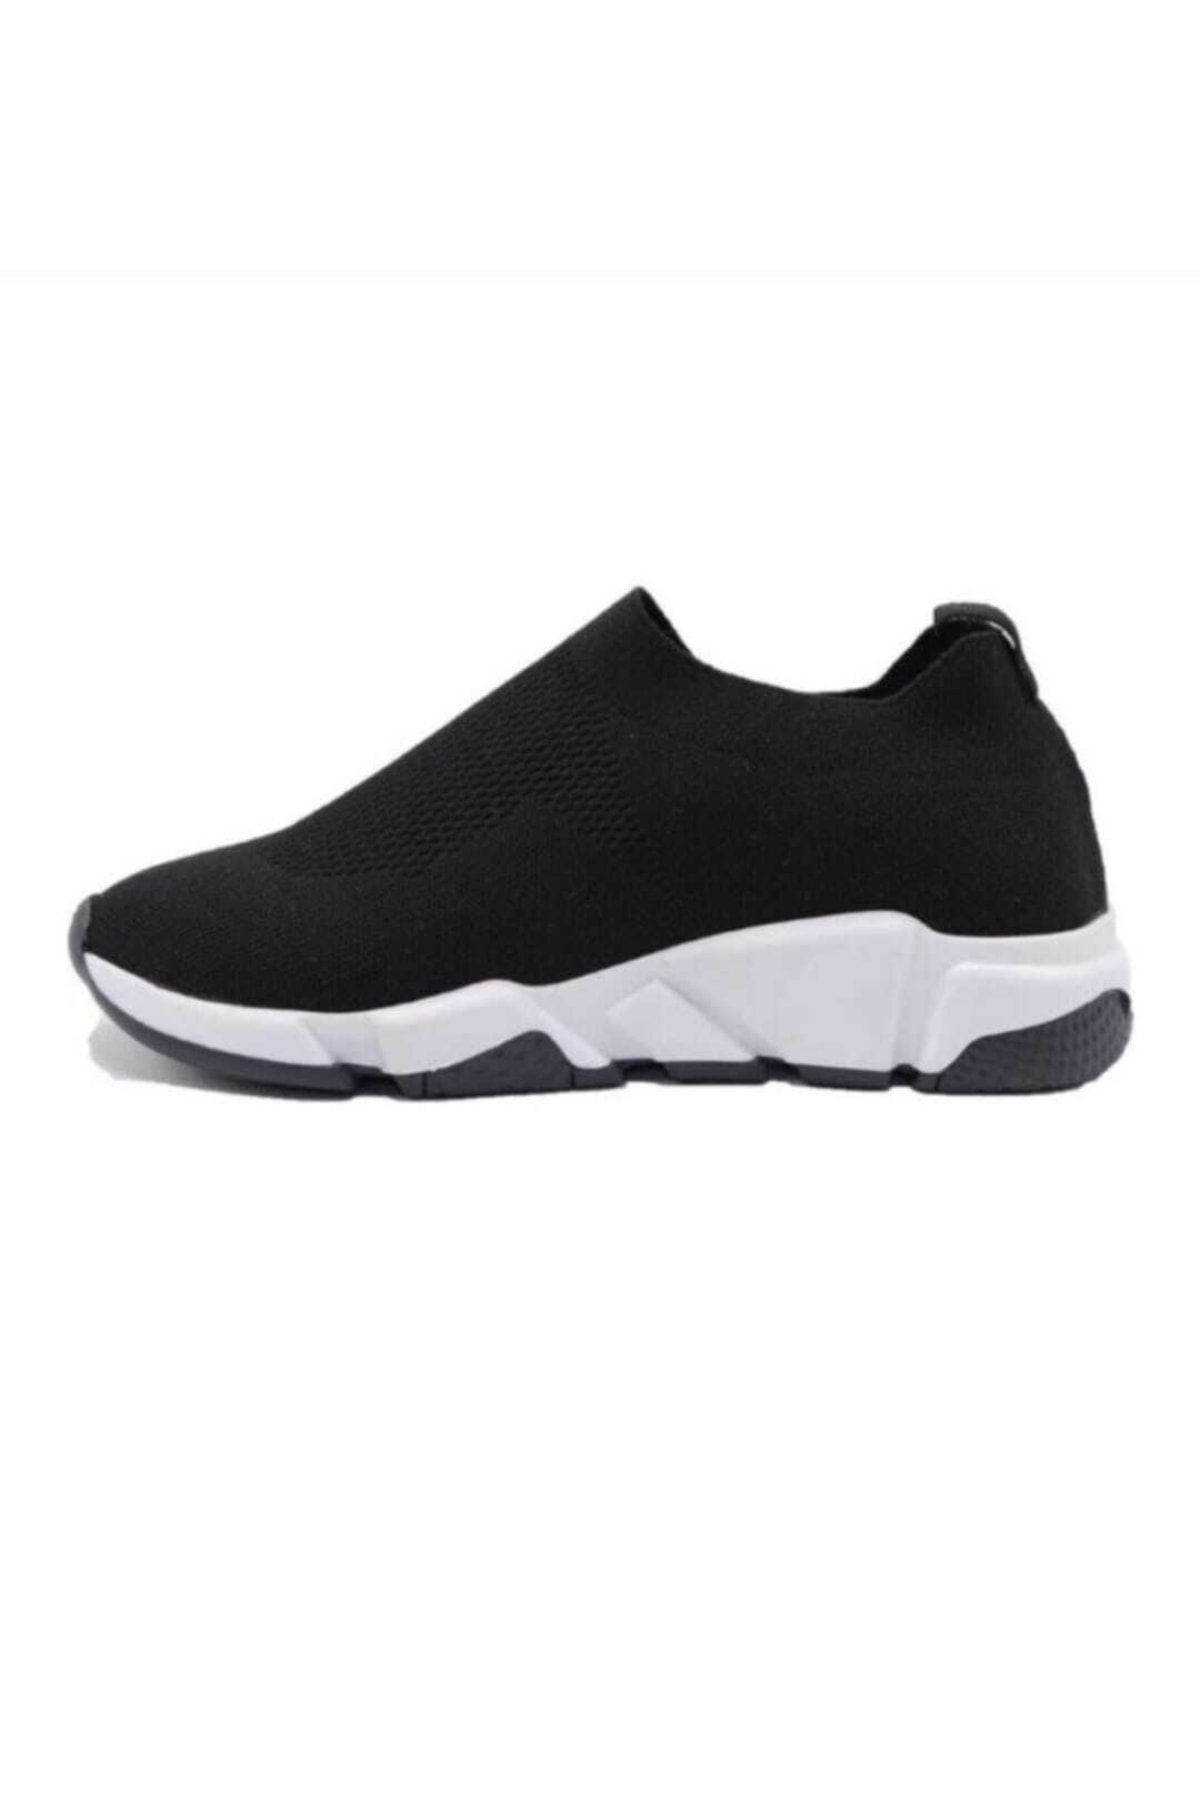 Faymi Shop Siyah Triko Çoraplı  Unisex Sneaker